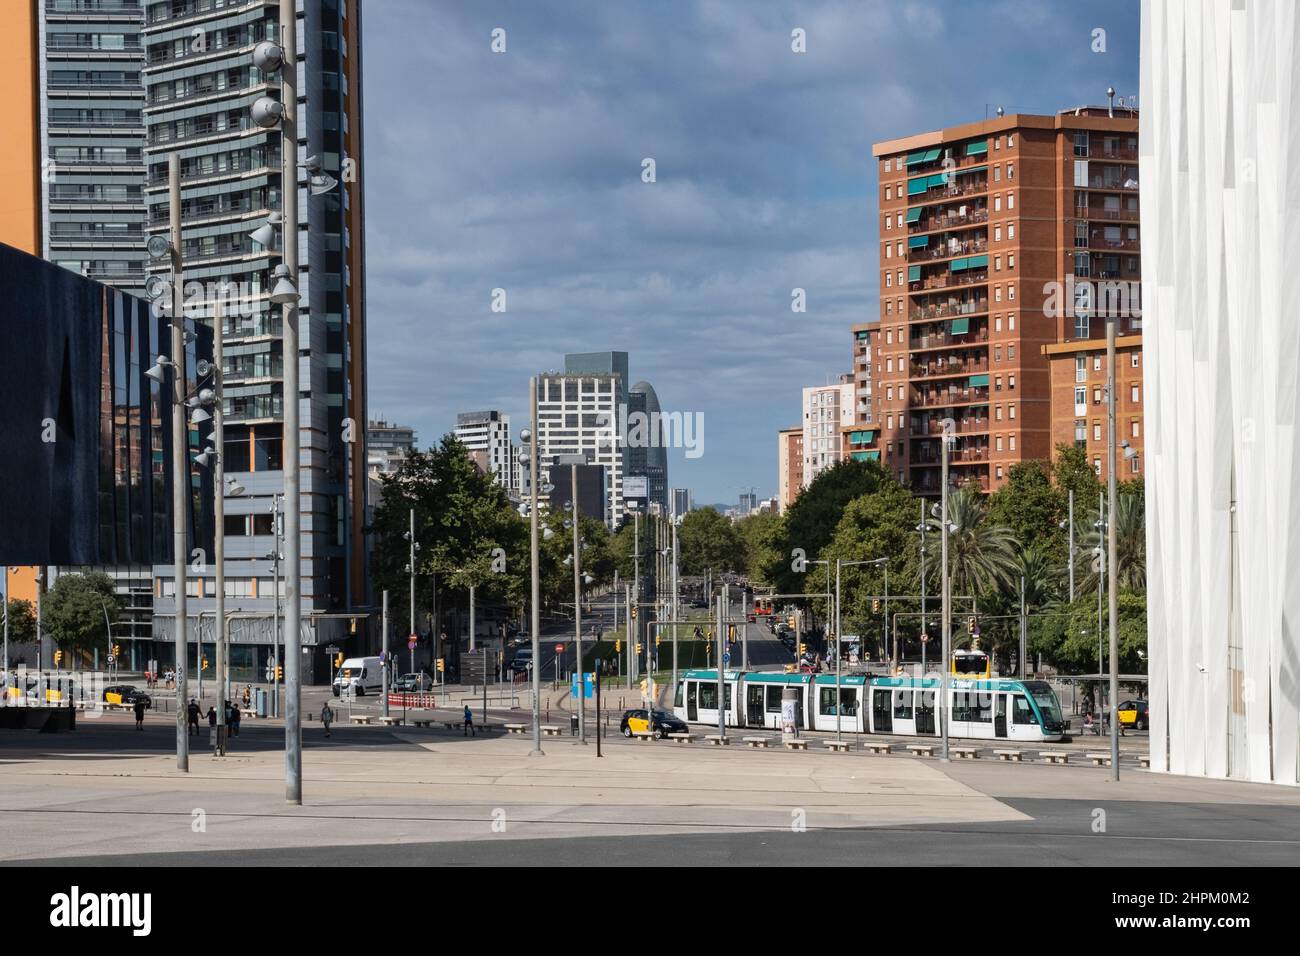 Blick auf die Av Diagonal in Barcelona, Spanien. Straßenbahn und Taxis fahren tagsüber entlang der Straße, Wolkenkratzer vor blauem Himmel im Hintergrund. Stockfoto